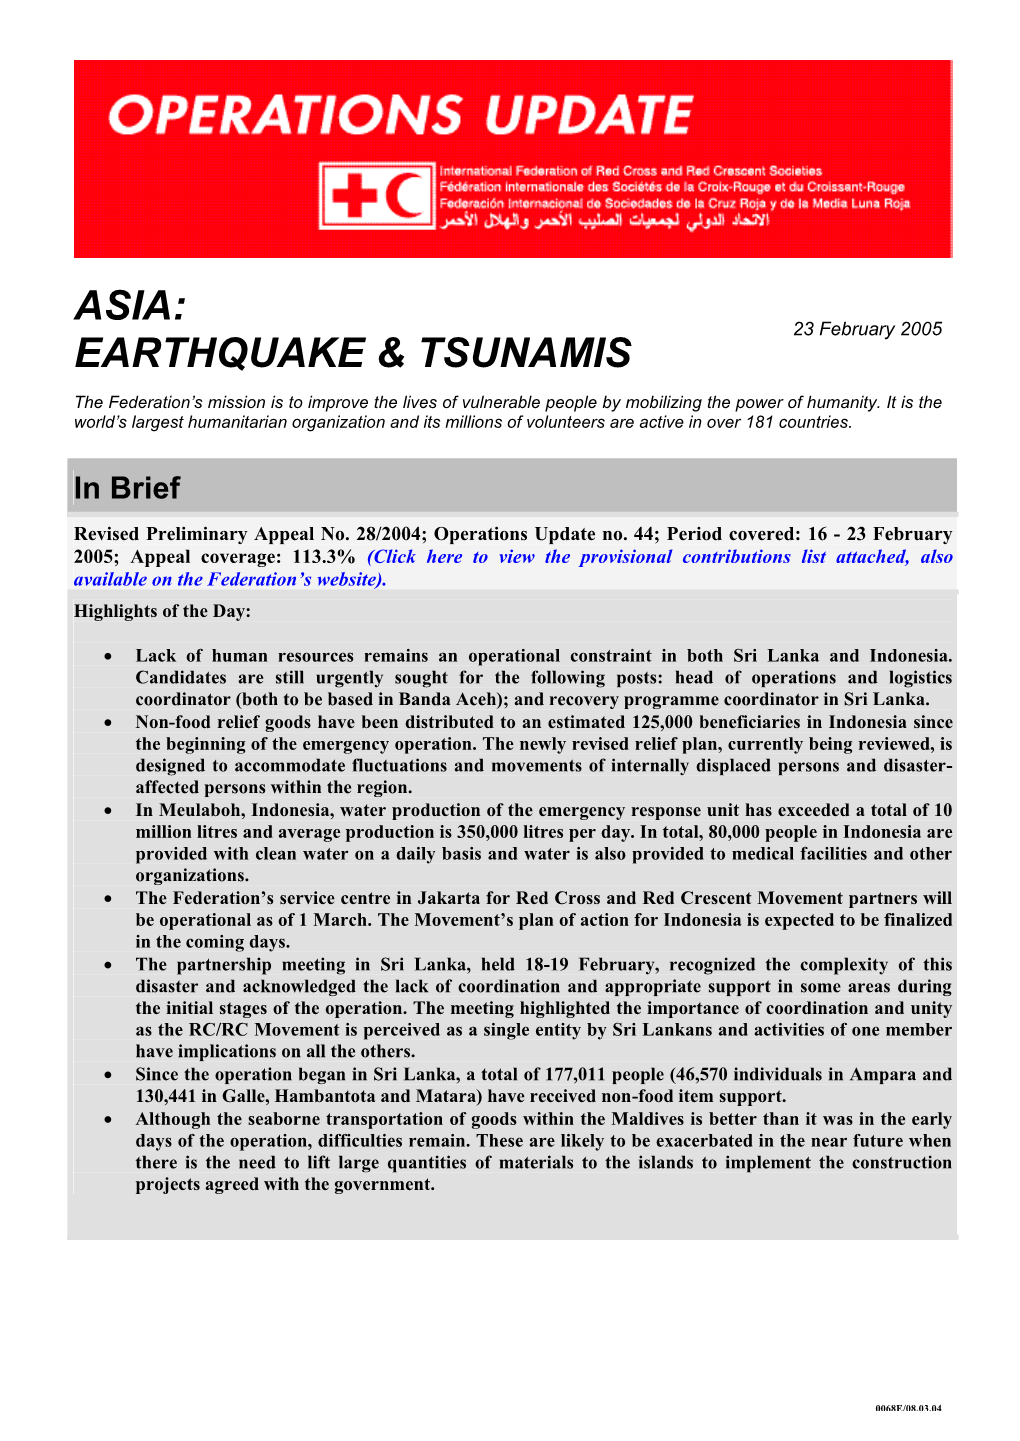 Asia: Earthquake & Tsunamis